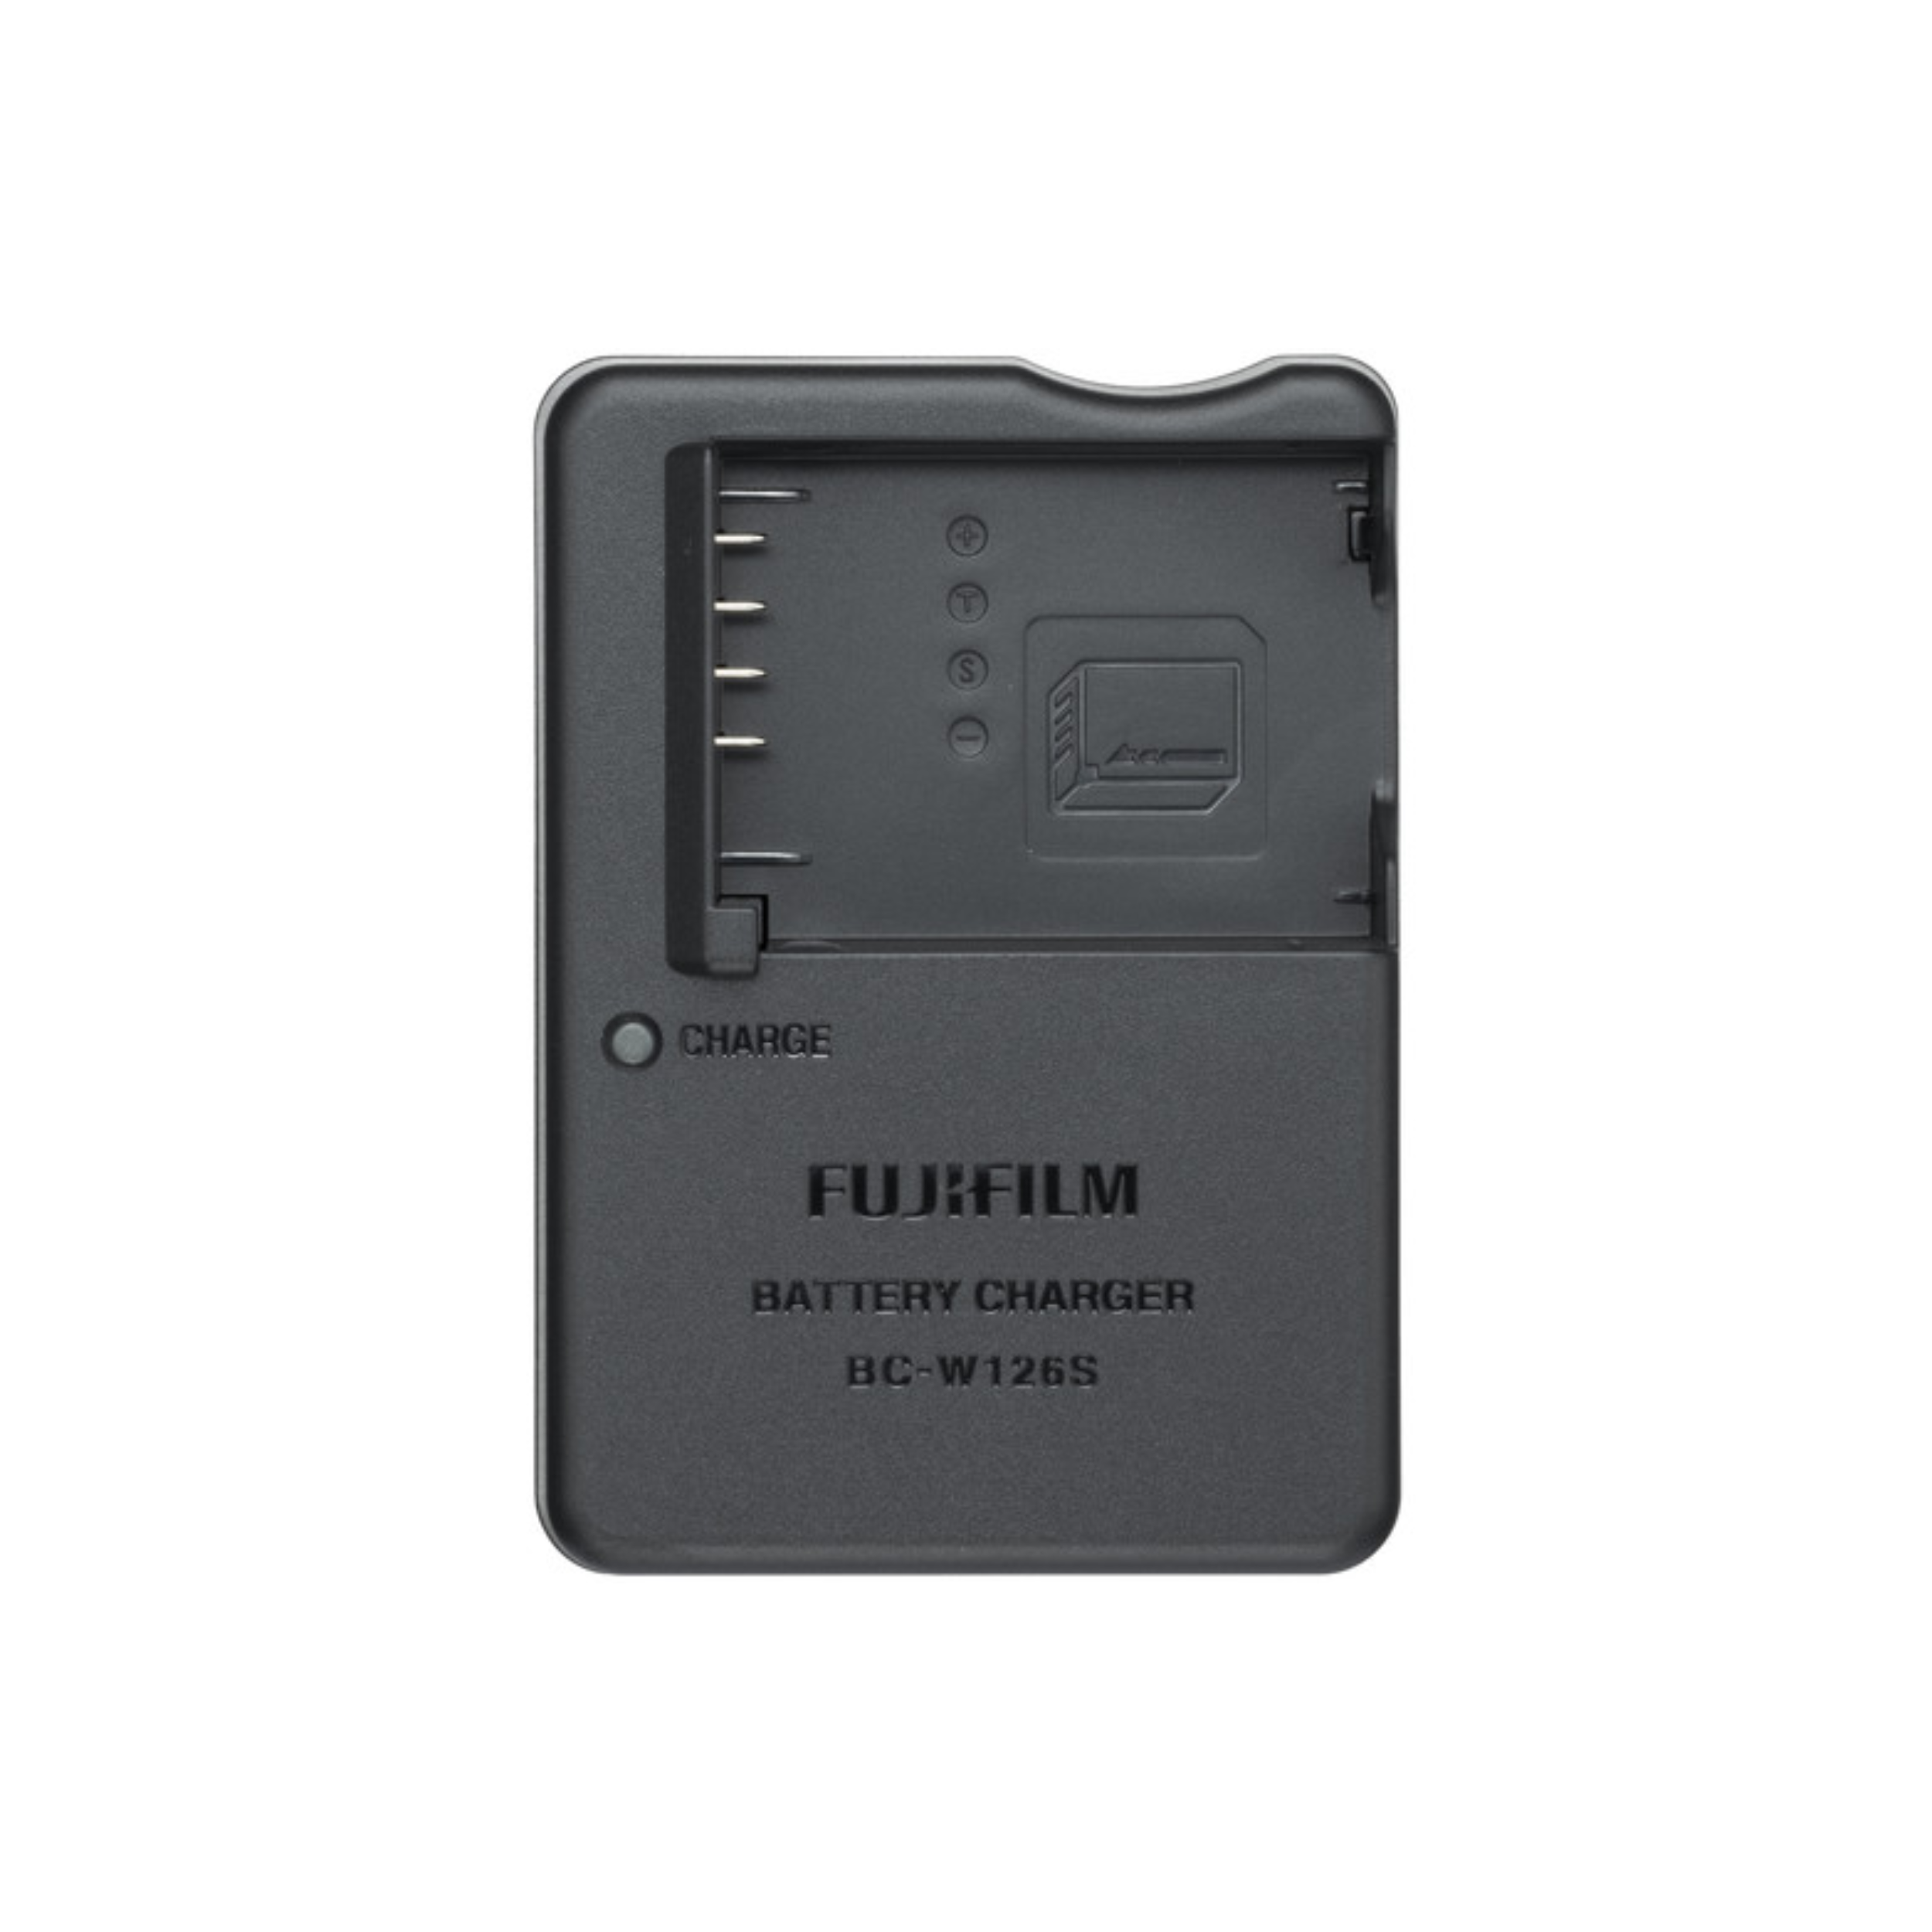 Fujifilm BC-W126 (S) Chargeur de batterie